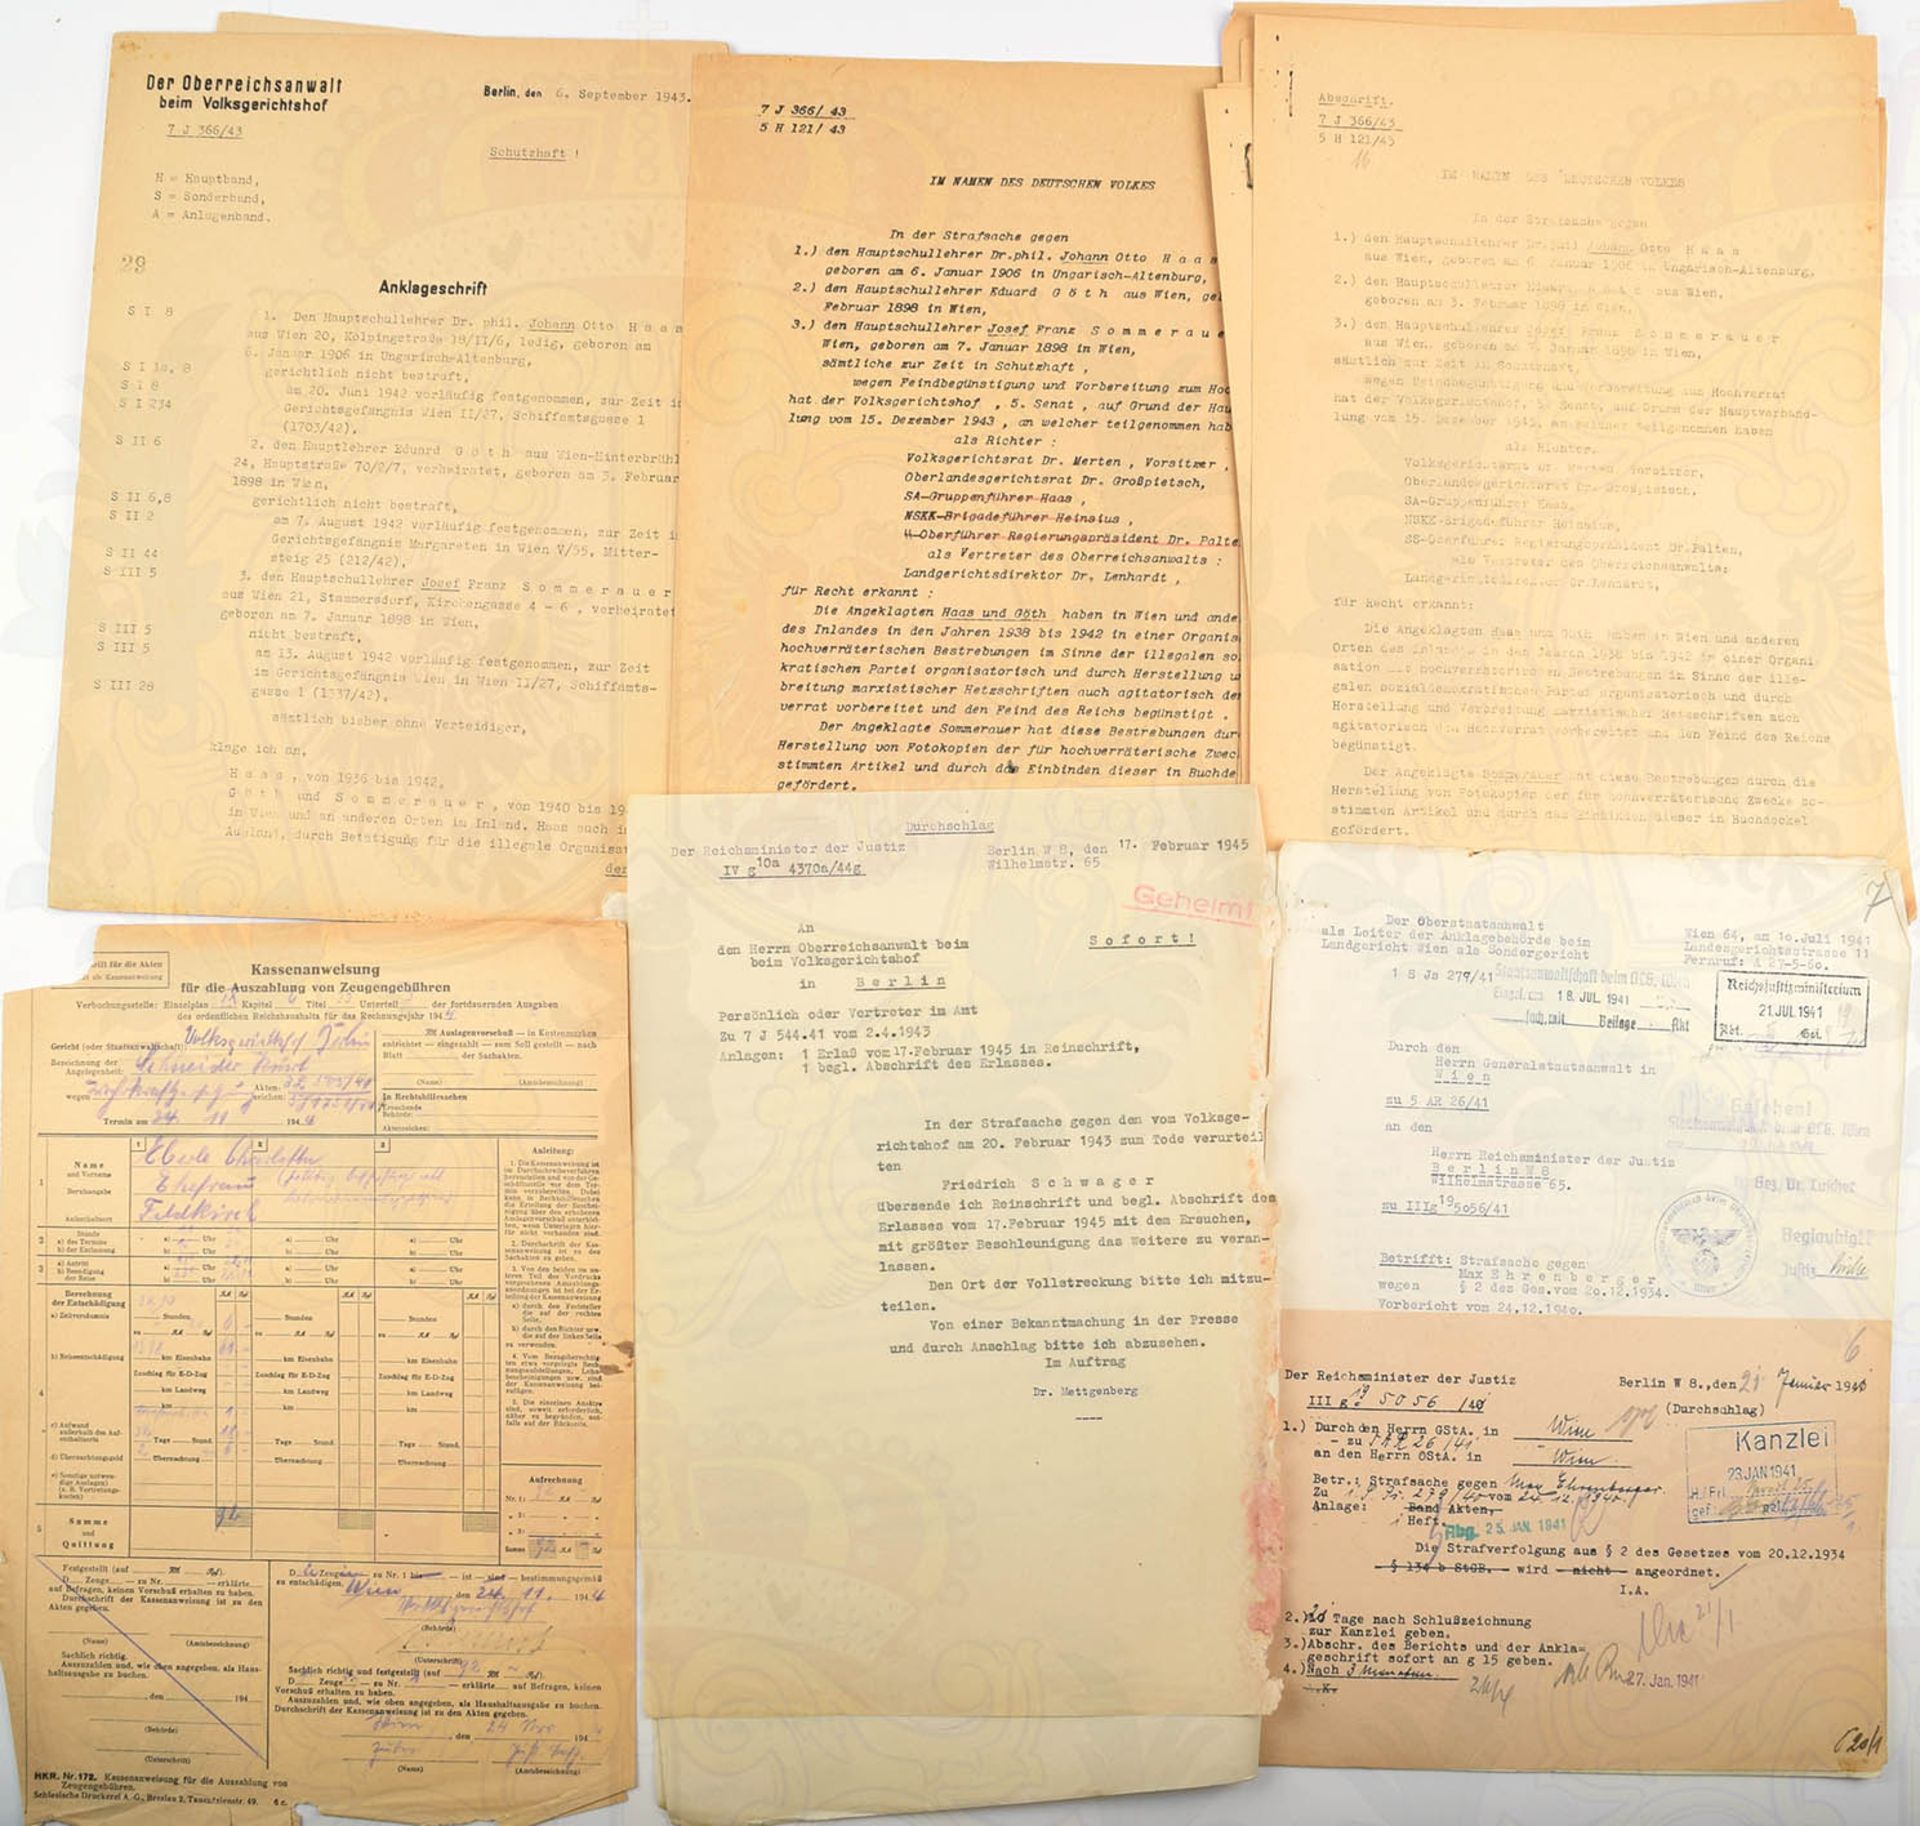 GERICHTSAKTE VOLKSGERICHTSHOF, Anklageschrift Berlin 1943 sowie Teile einer weiteren Akte, Wien